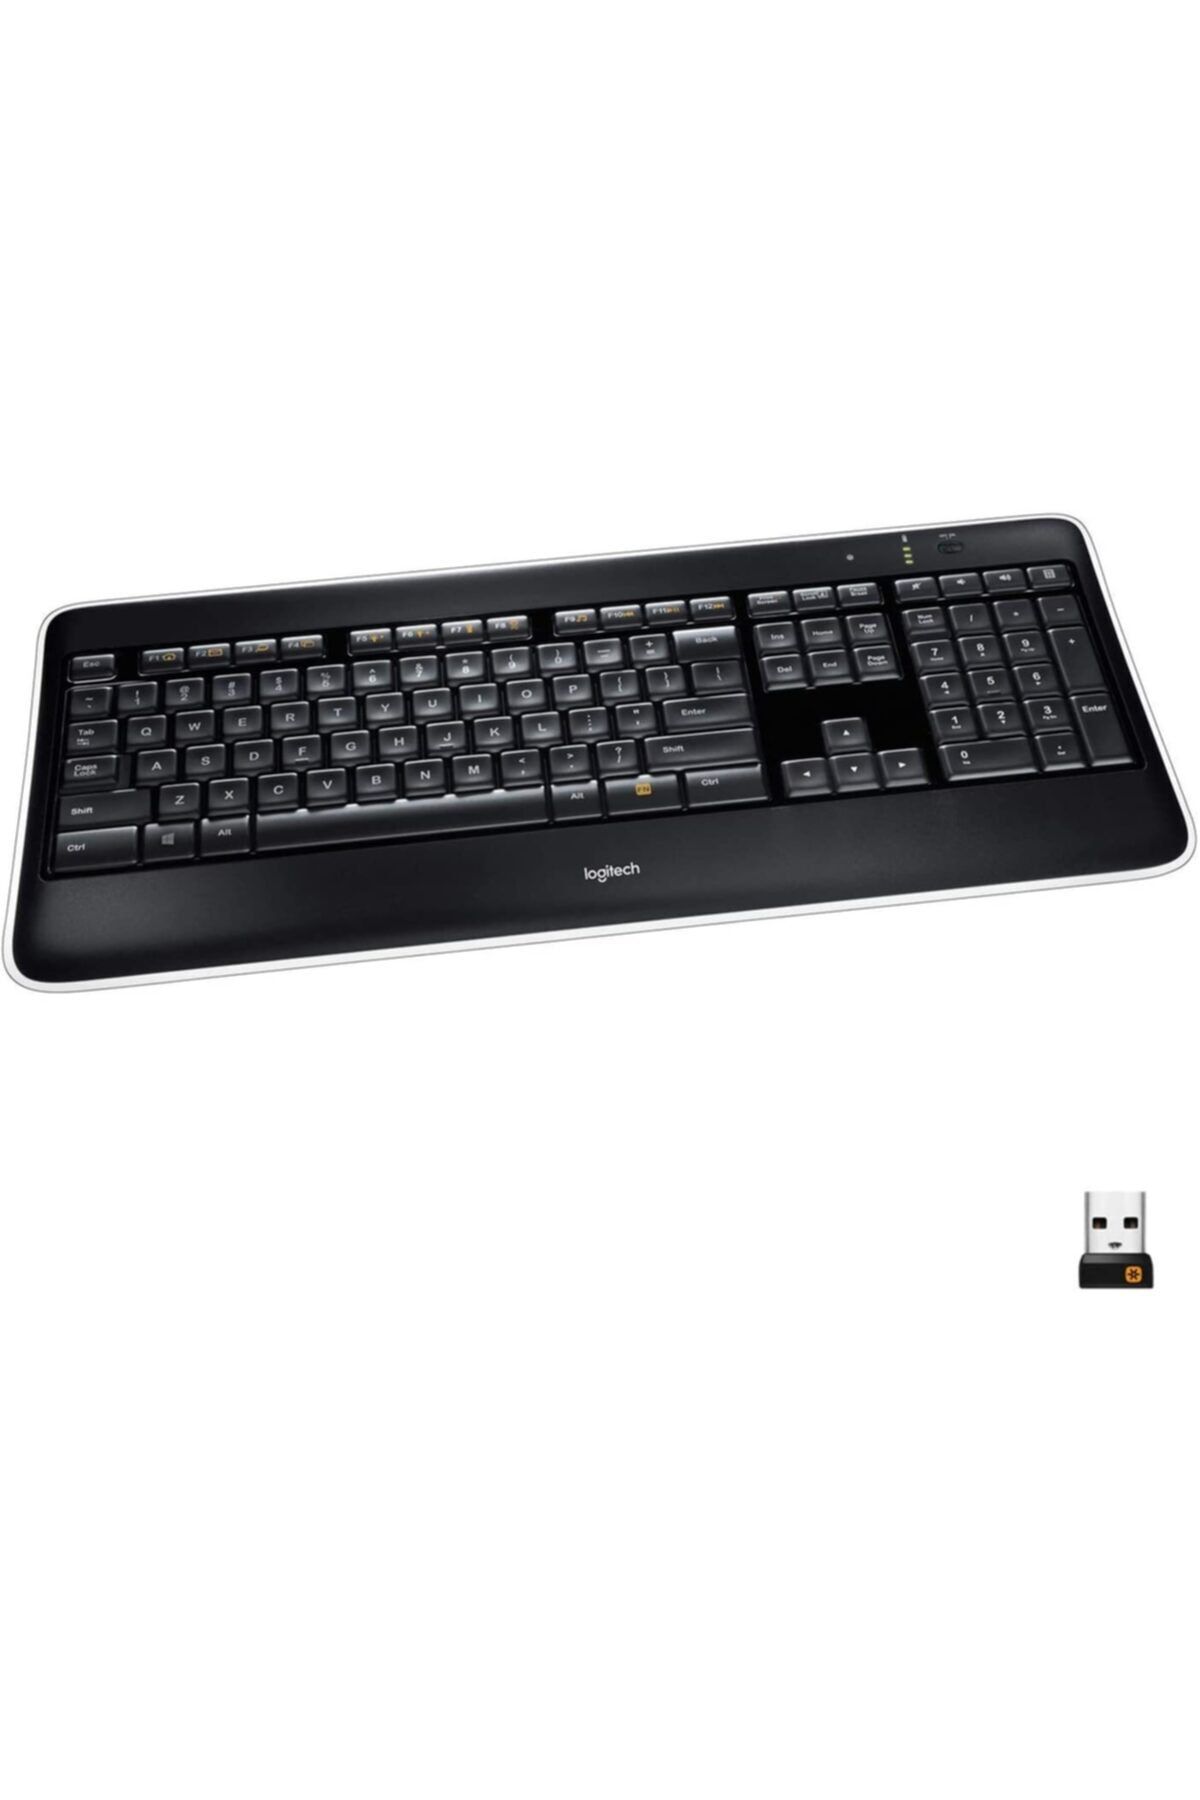 logitech Wireless Illuminated Keyboard K800